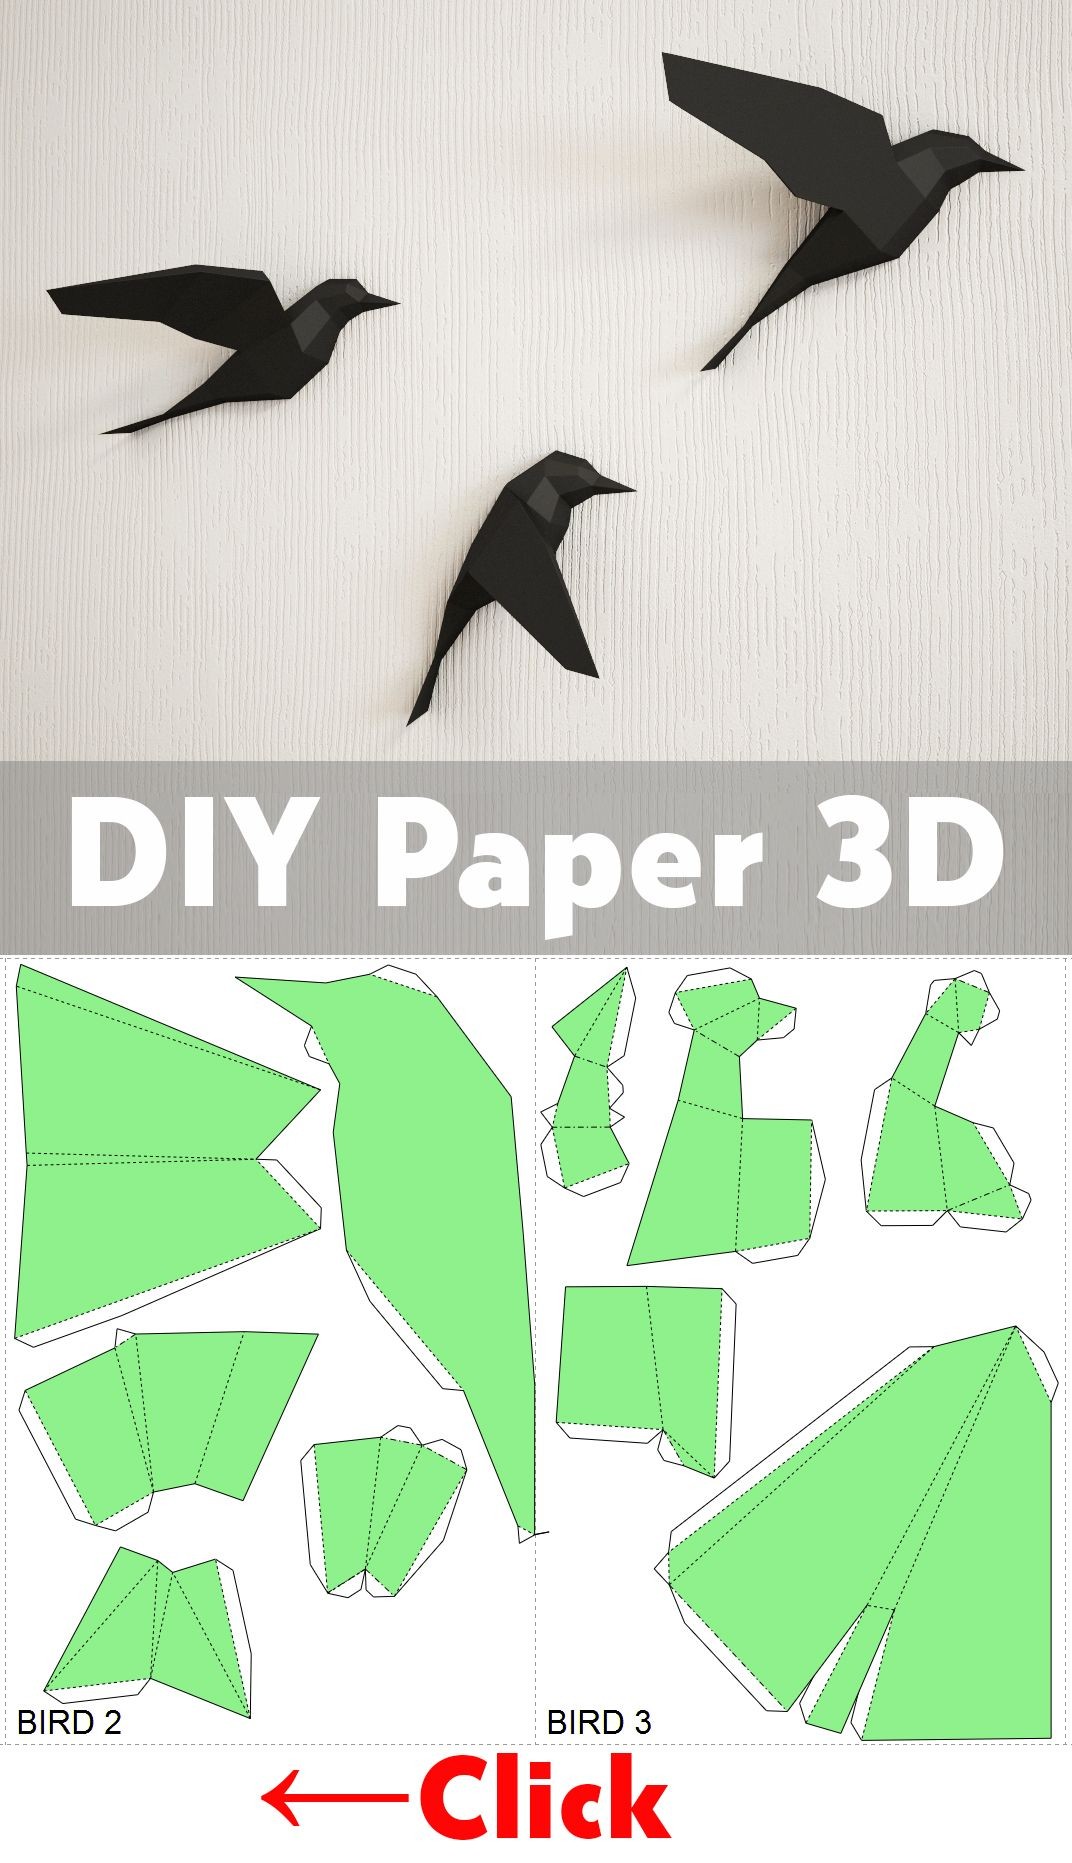 Chicken Papercraft Diy Paper Birds On Wall 3d Papercraft Easy Paper Model Sculpture